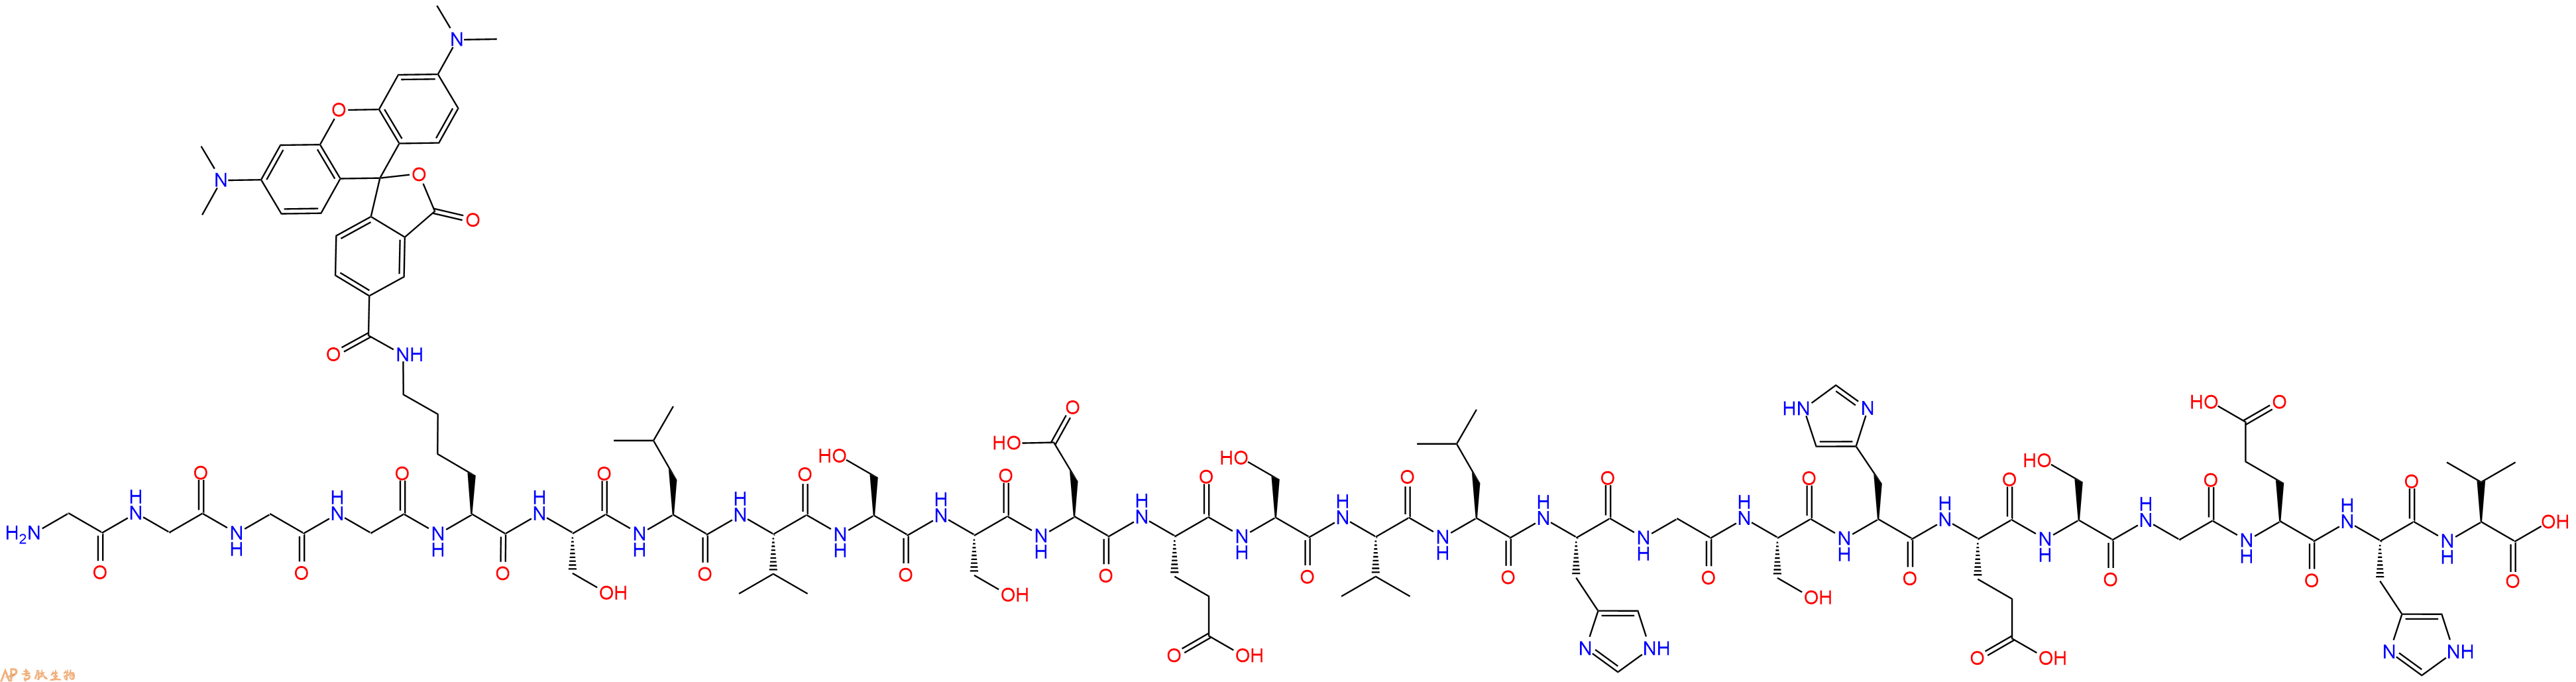 专肽生物产品二十五肽GGGG-K(TAMRA)-SLVSSDESVLHGSHESGEHV